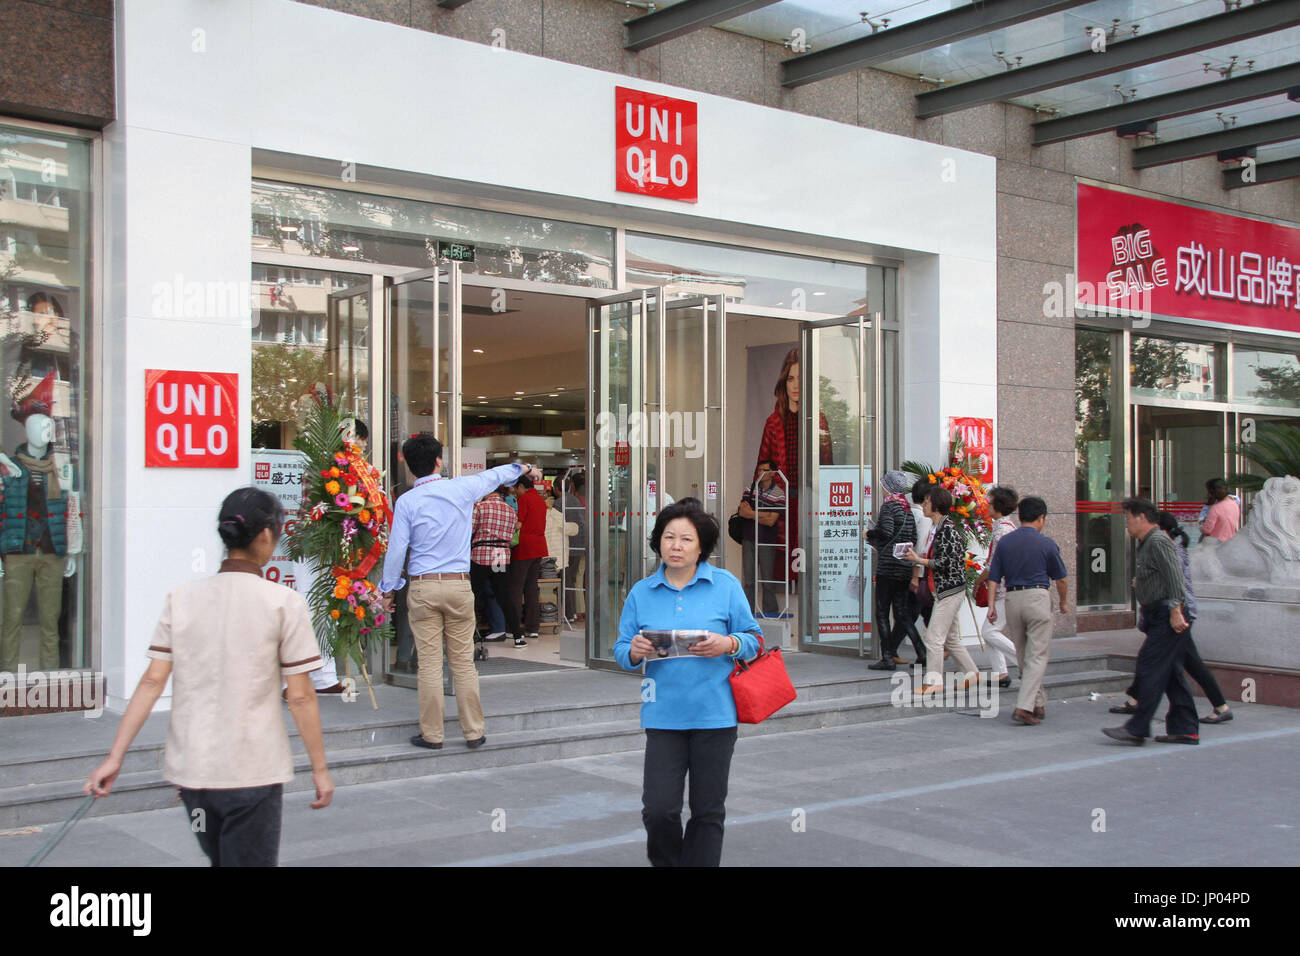 SHANGHAI, China - La cadena de tiendas de ropa casual japonesa Uniqlo abre  una nueva tienda en Shanghai el 29 de septiembre de 2012, a pesar de las  continuas manifestaciones anti-Japón en